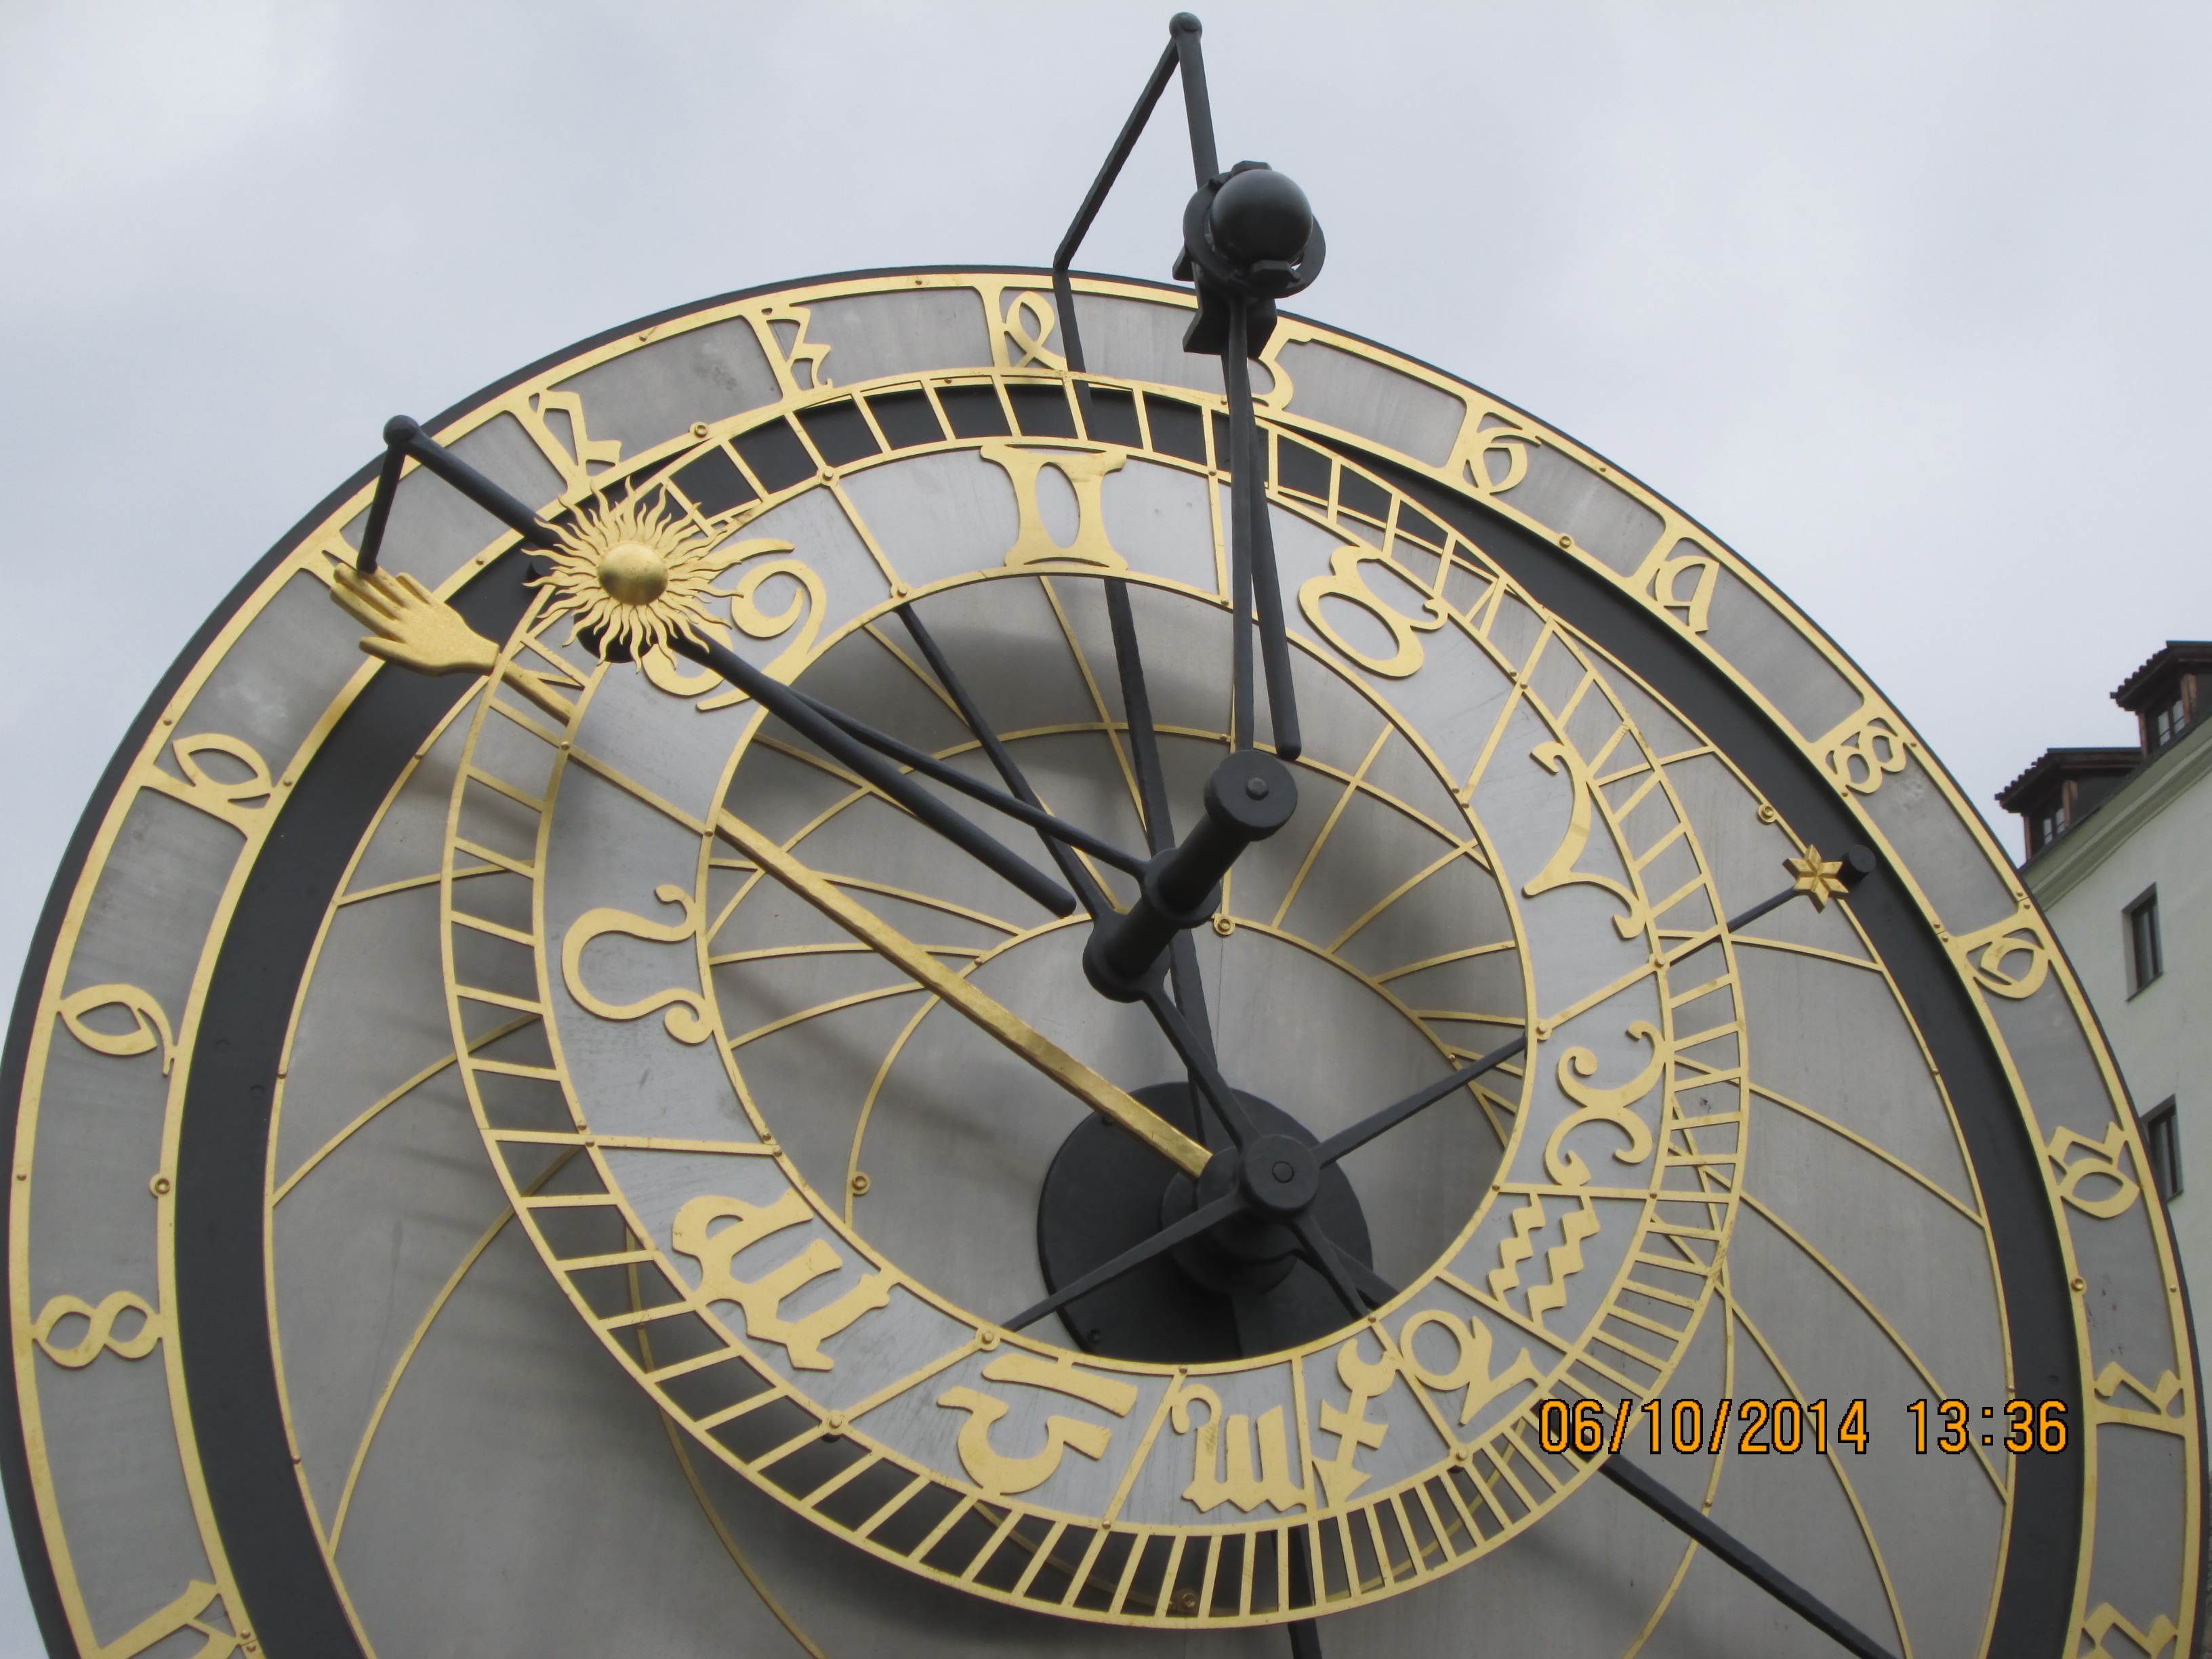 2014-10-6 Kadaň, replika orloje (2)